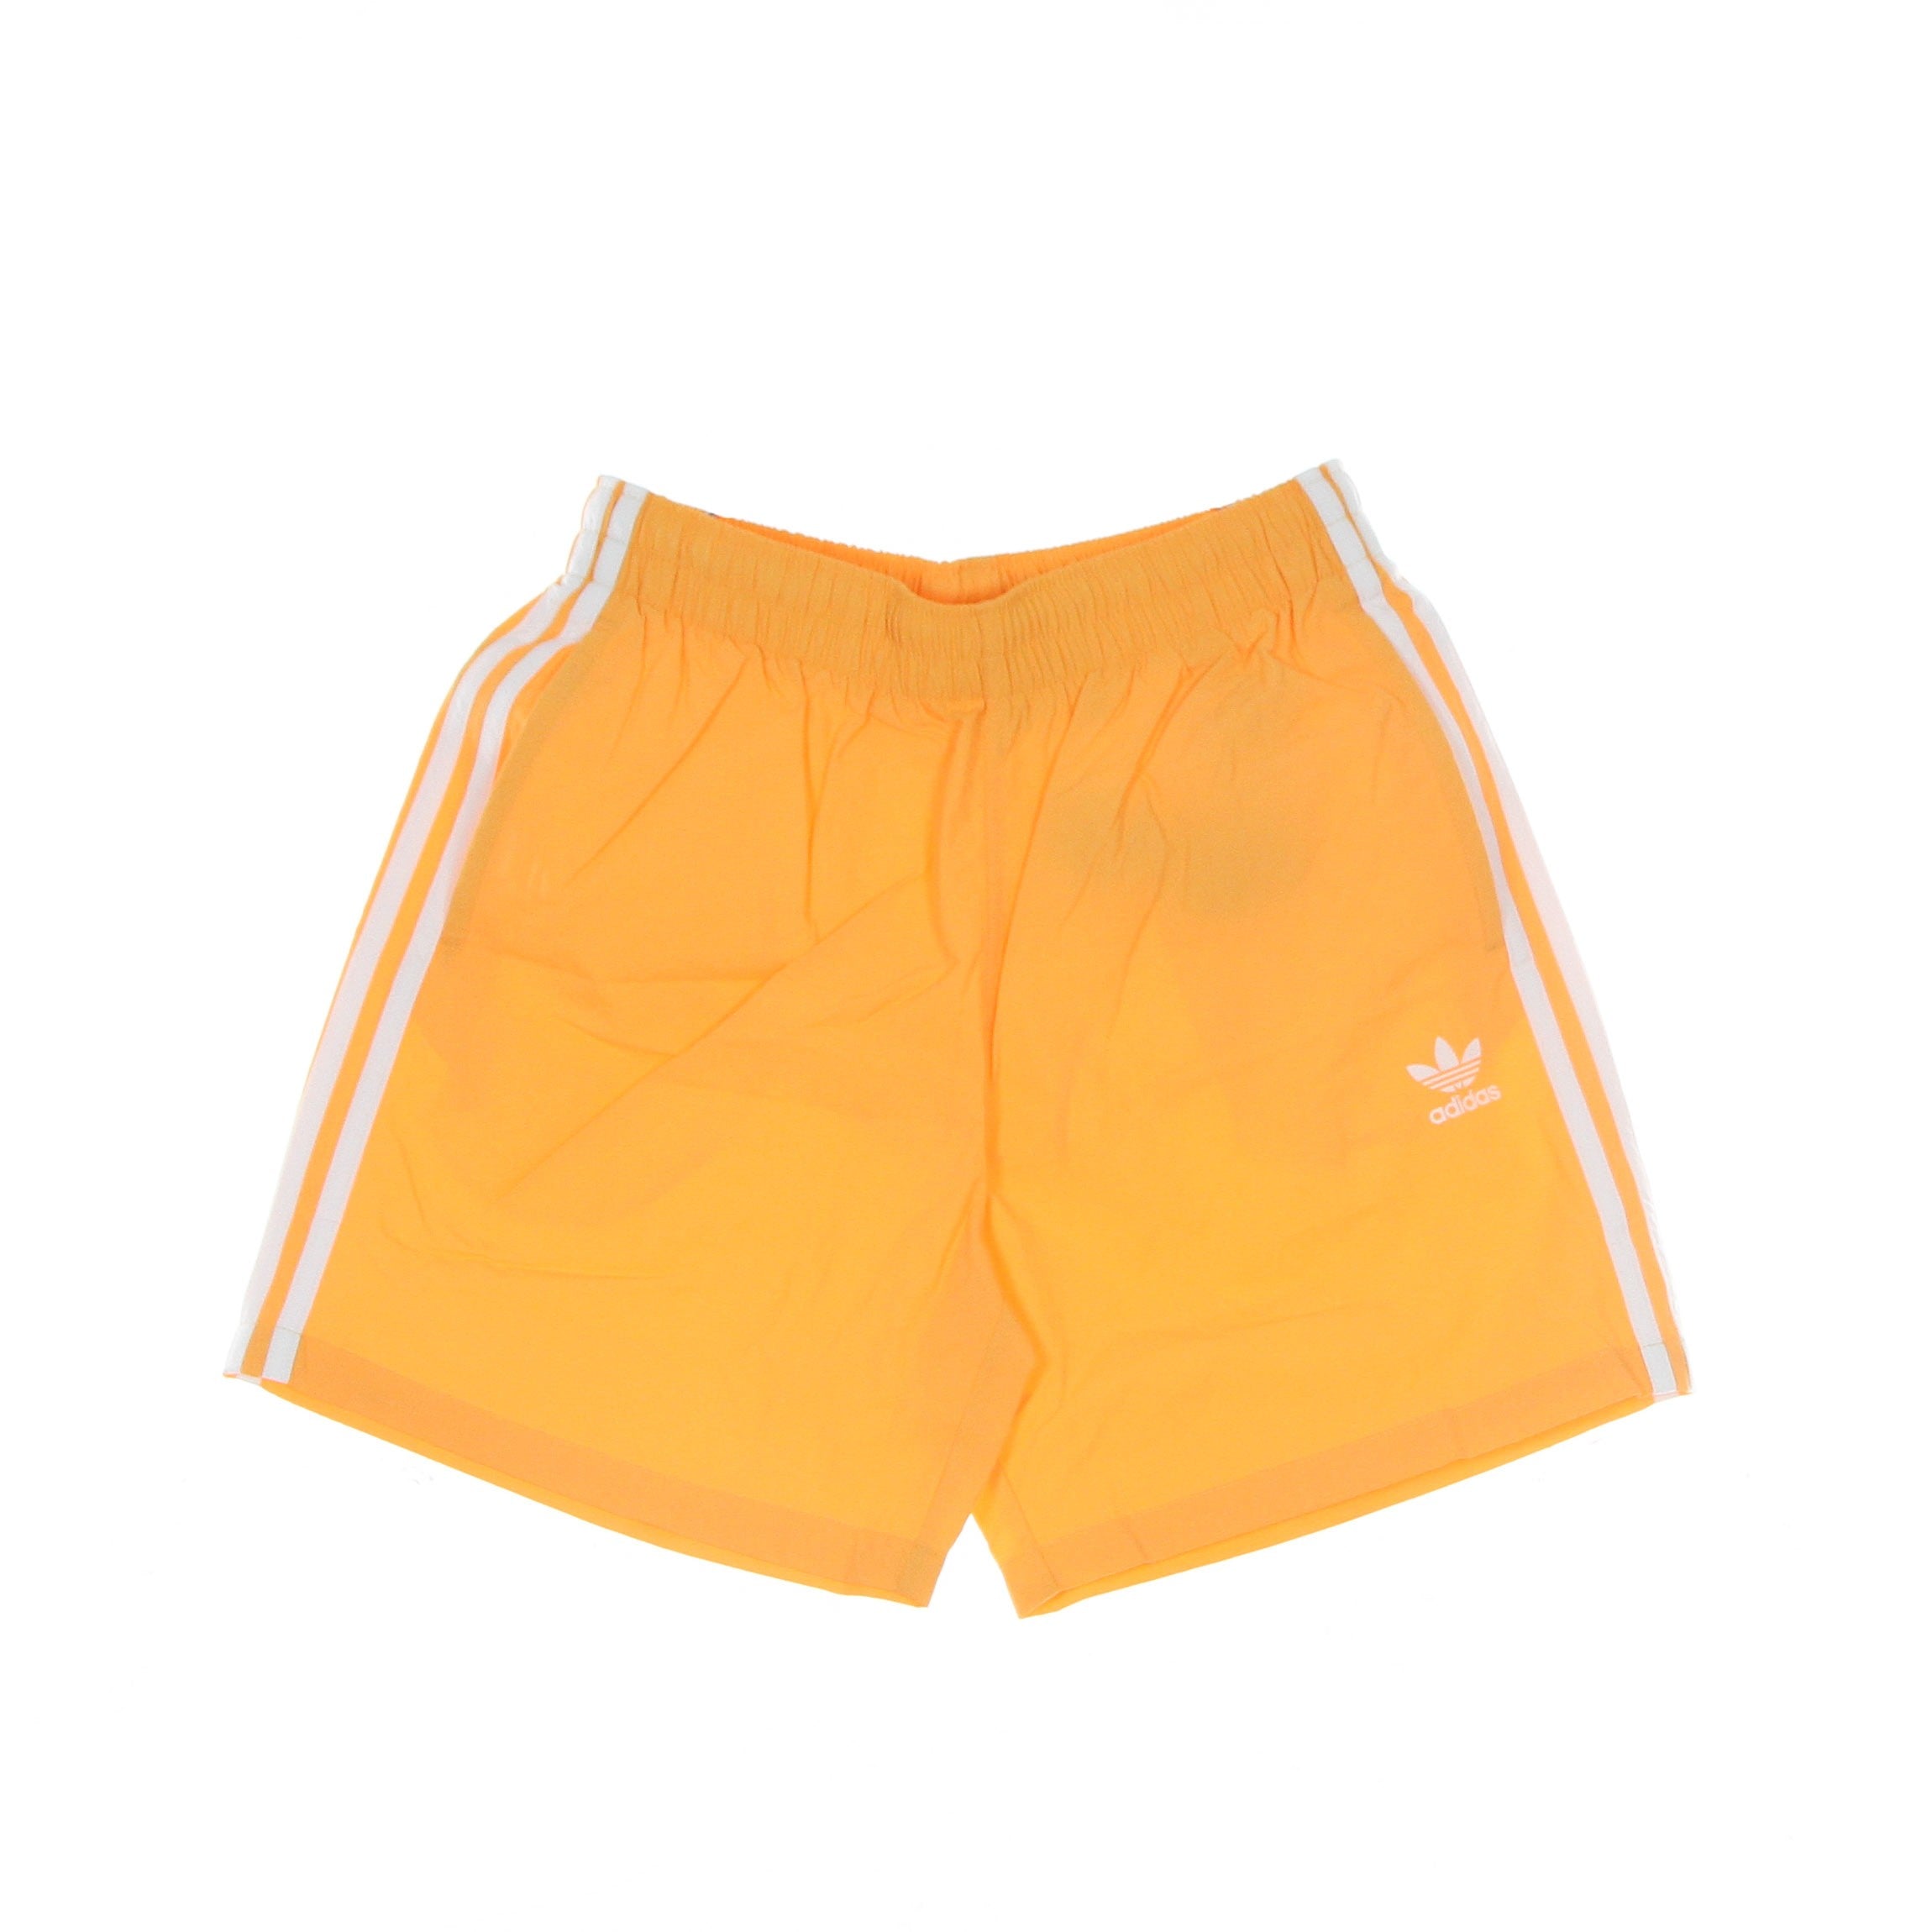 Adidas, Costume Pantaloncino Uomo 3 Stripes Swimshort, Hazy Orange